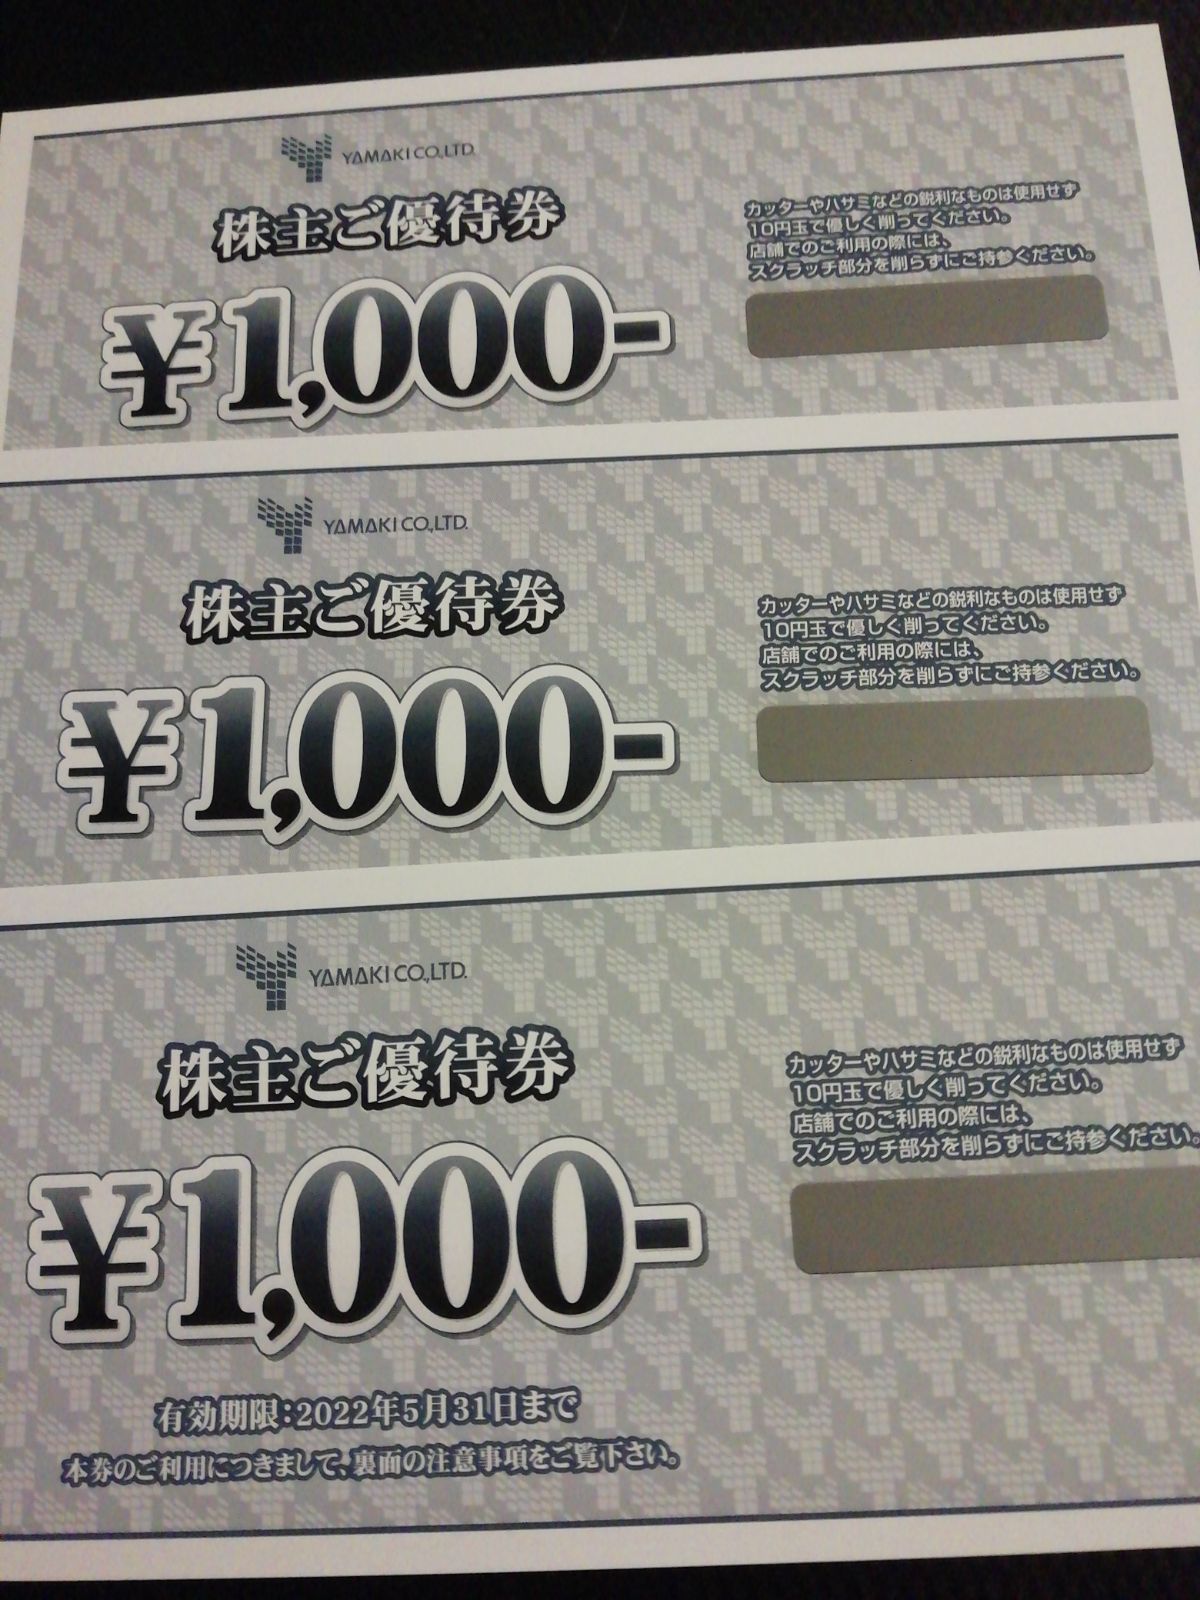 山喜 株主優待券 1000円分 - 割引券